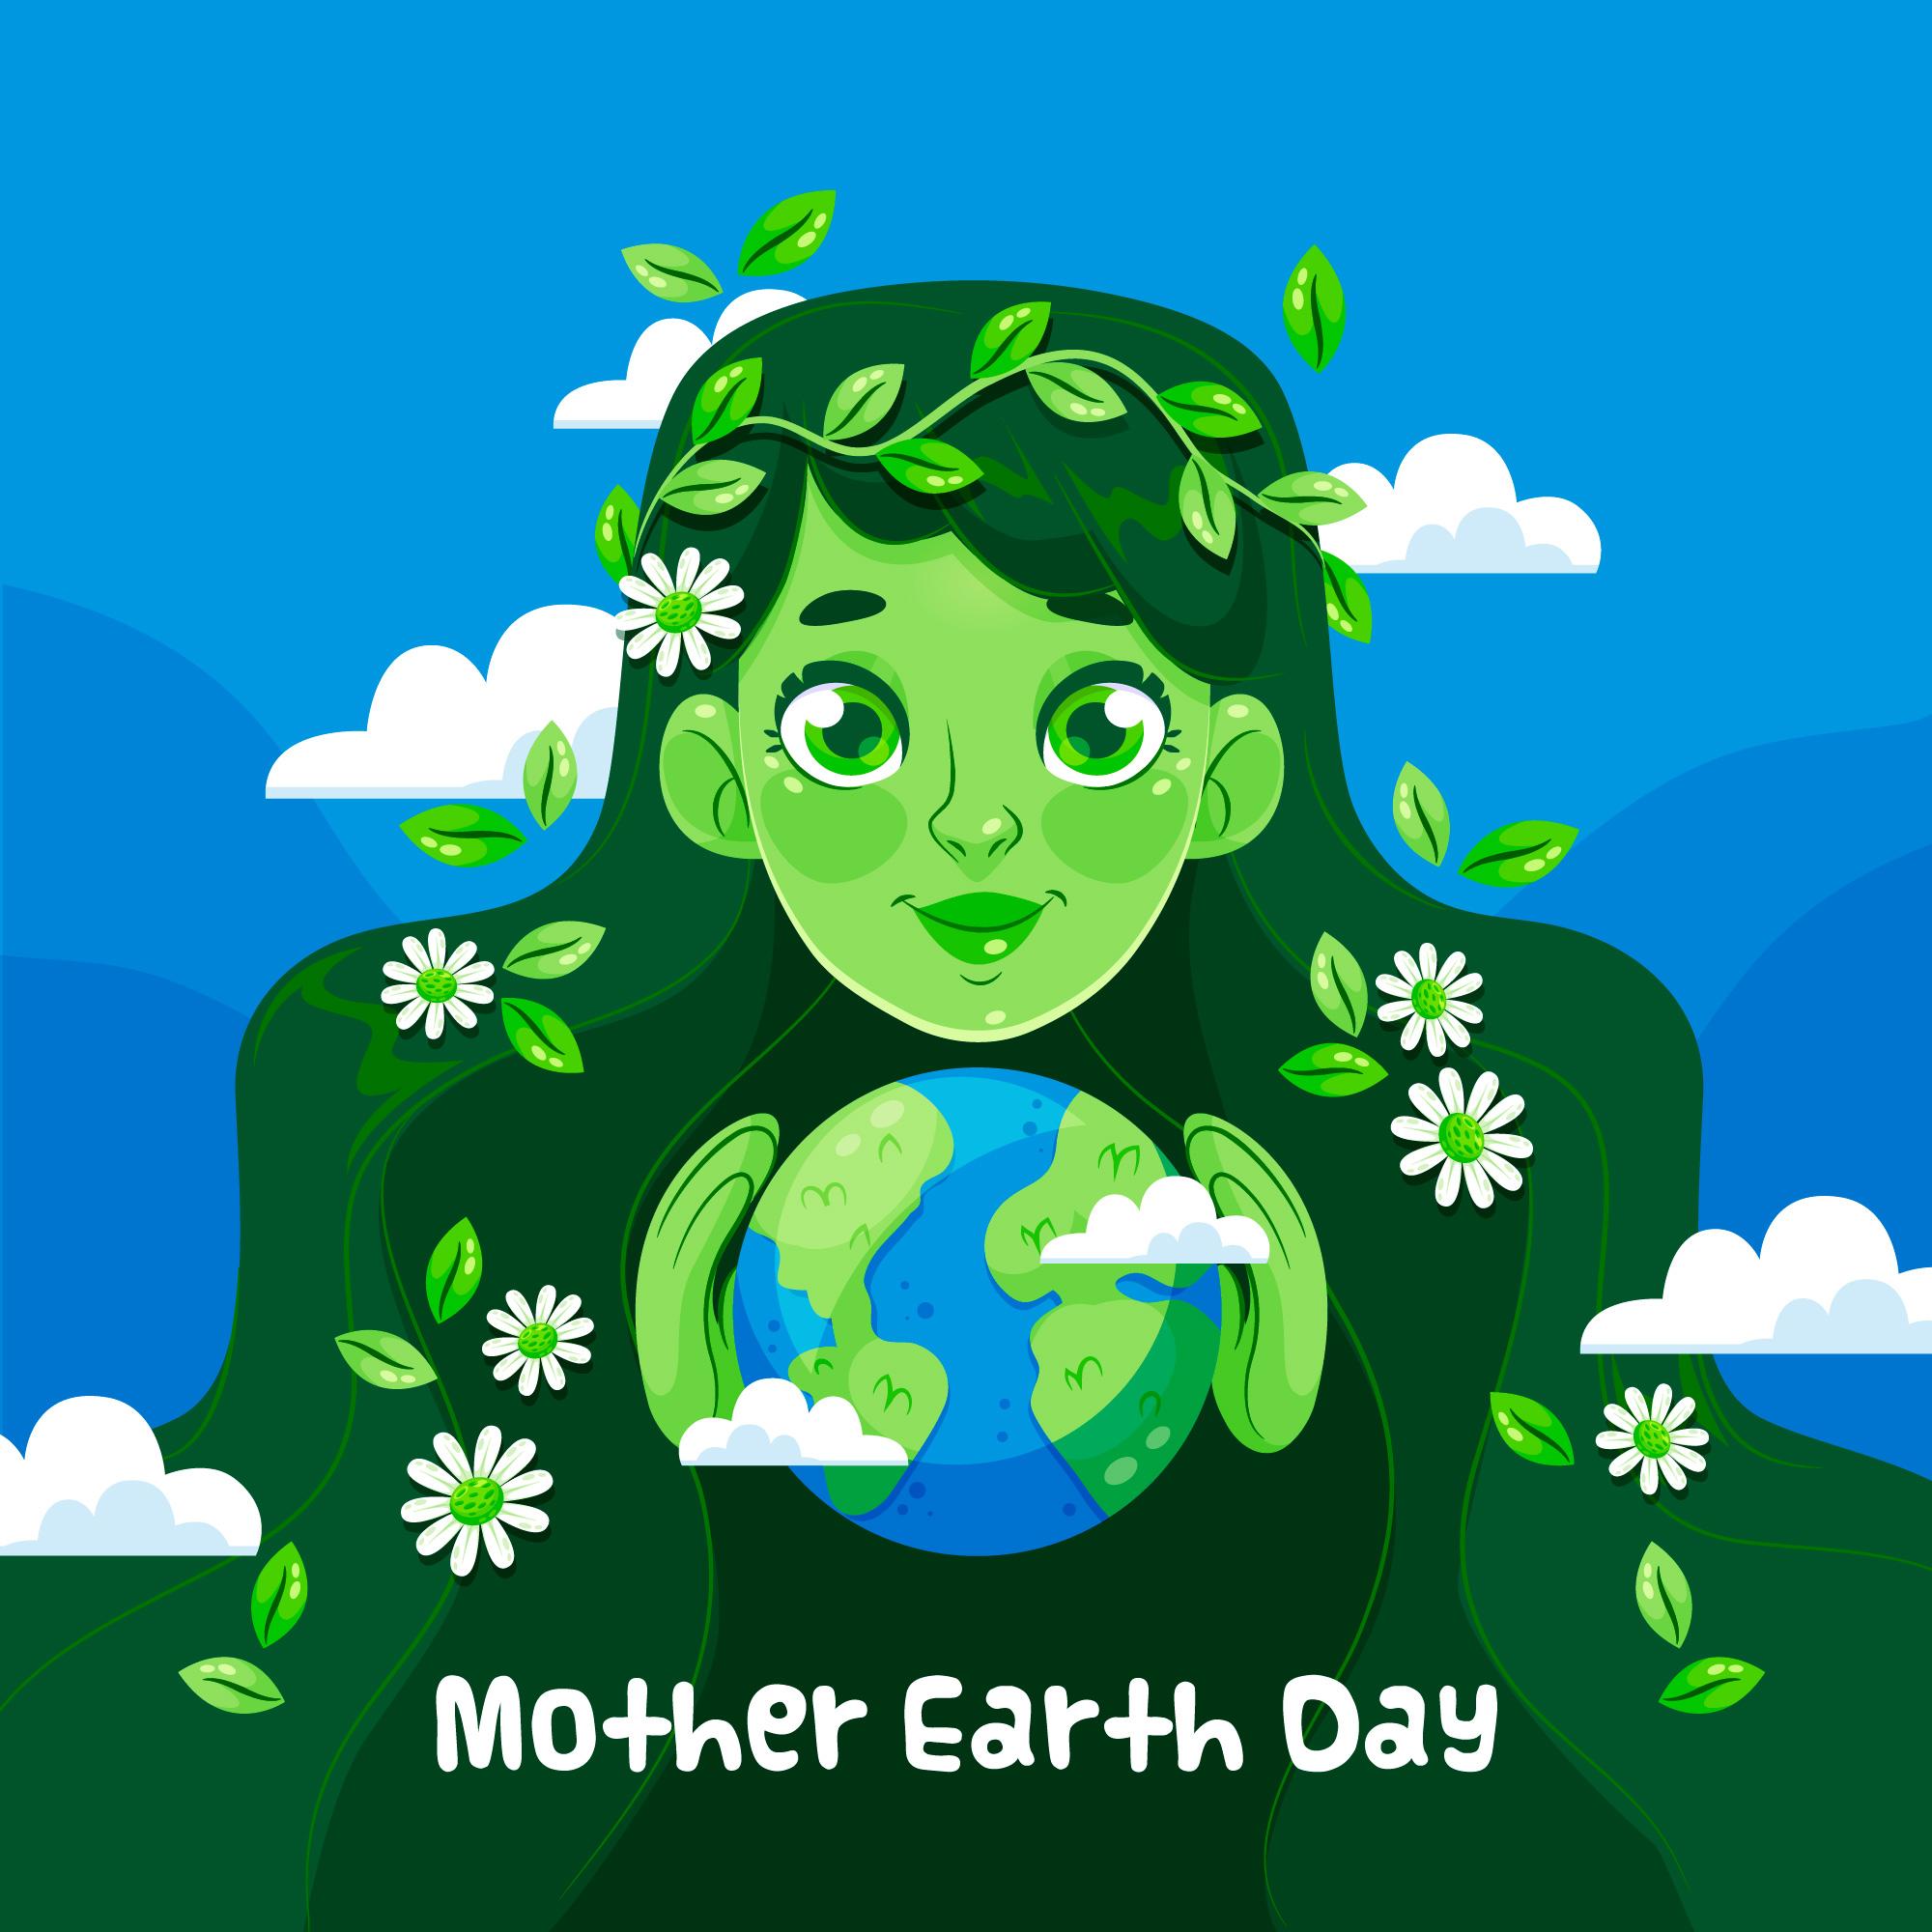 世界地球日绿色环保为主题插图0